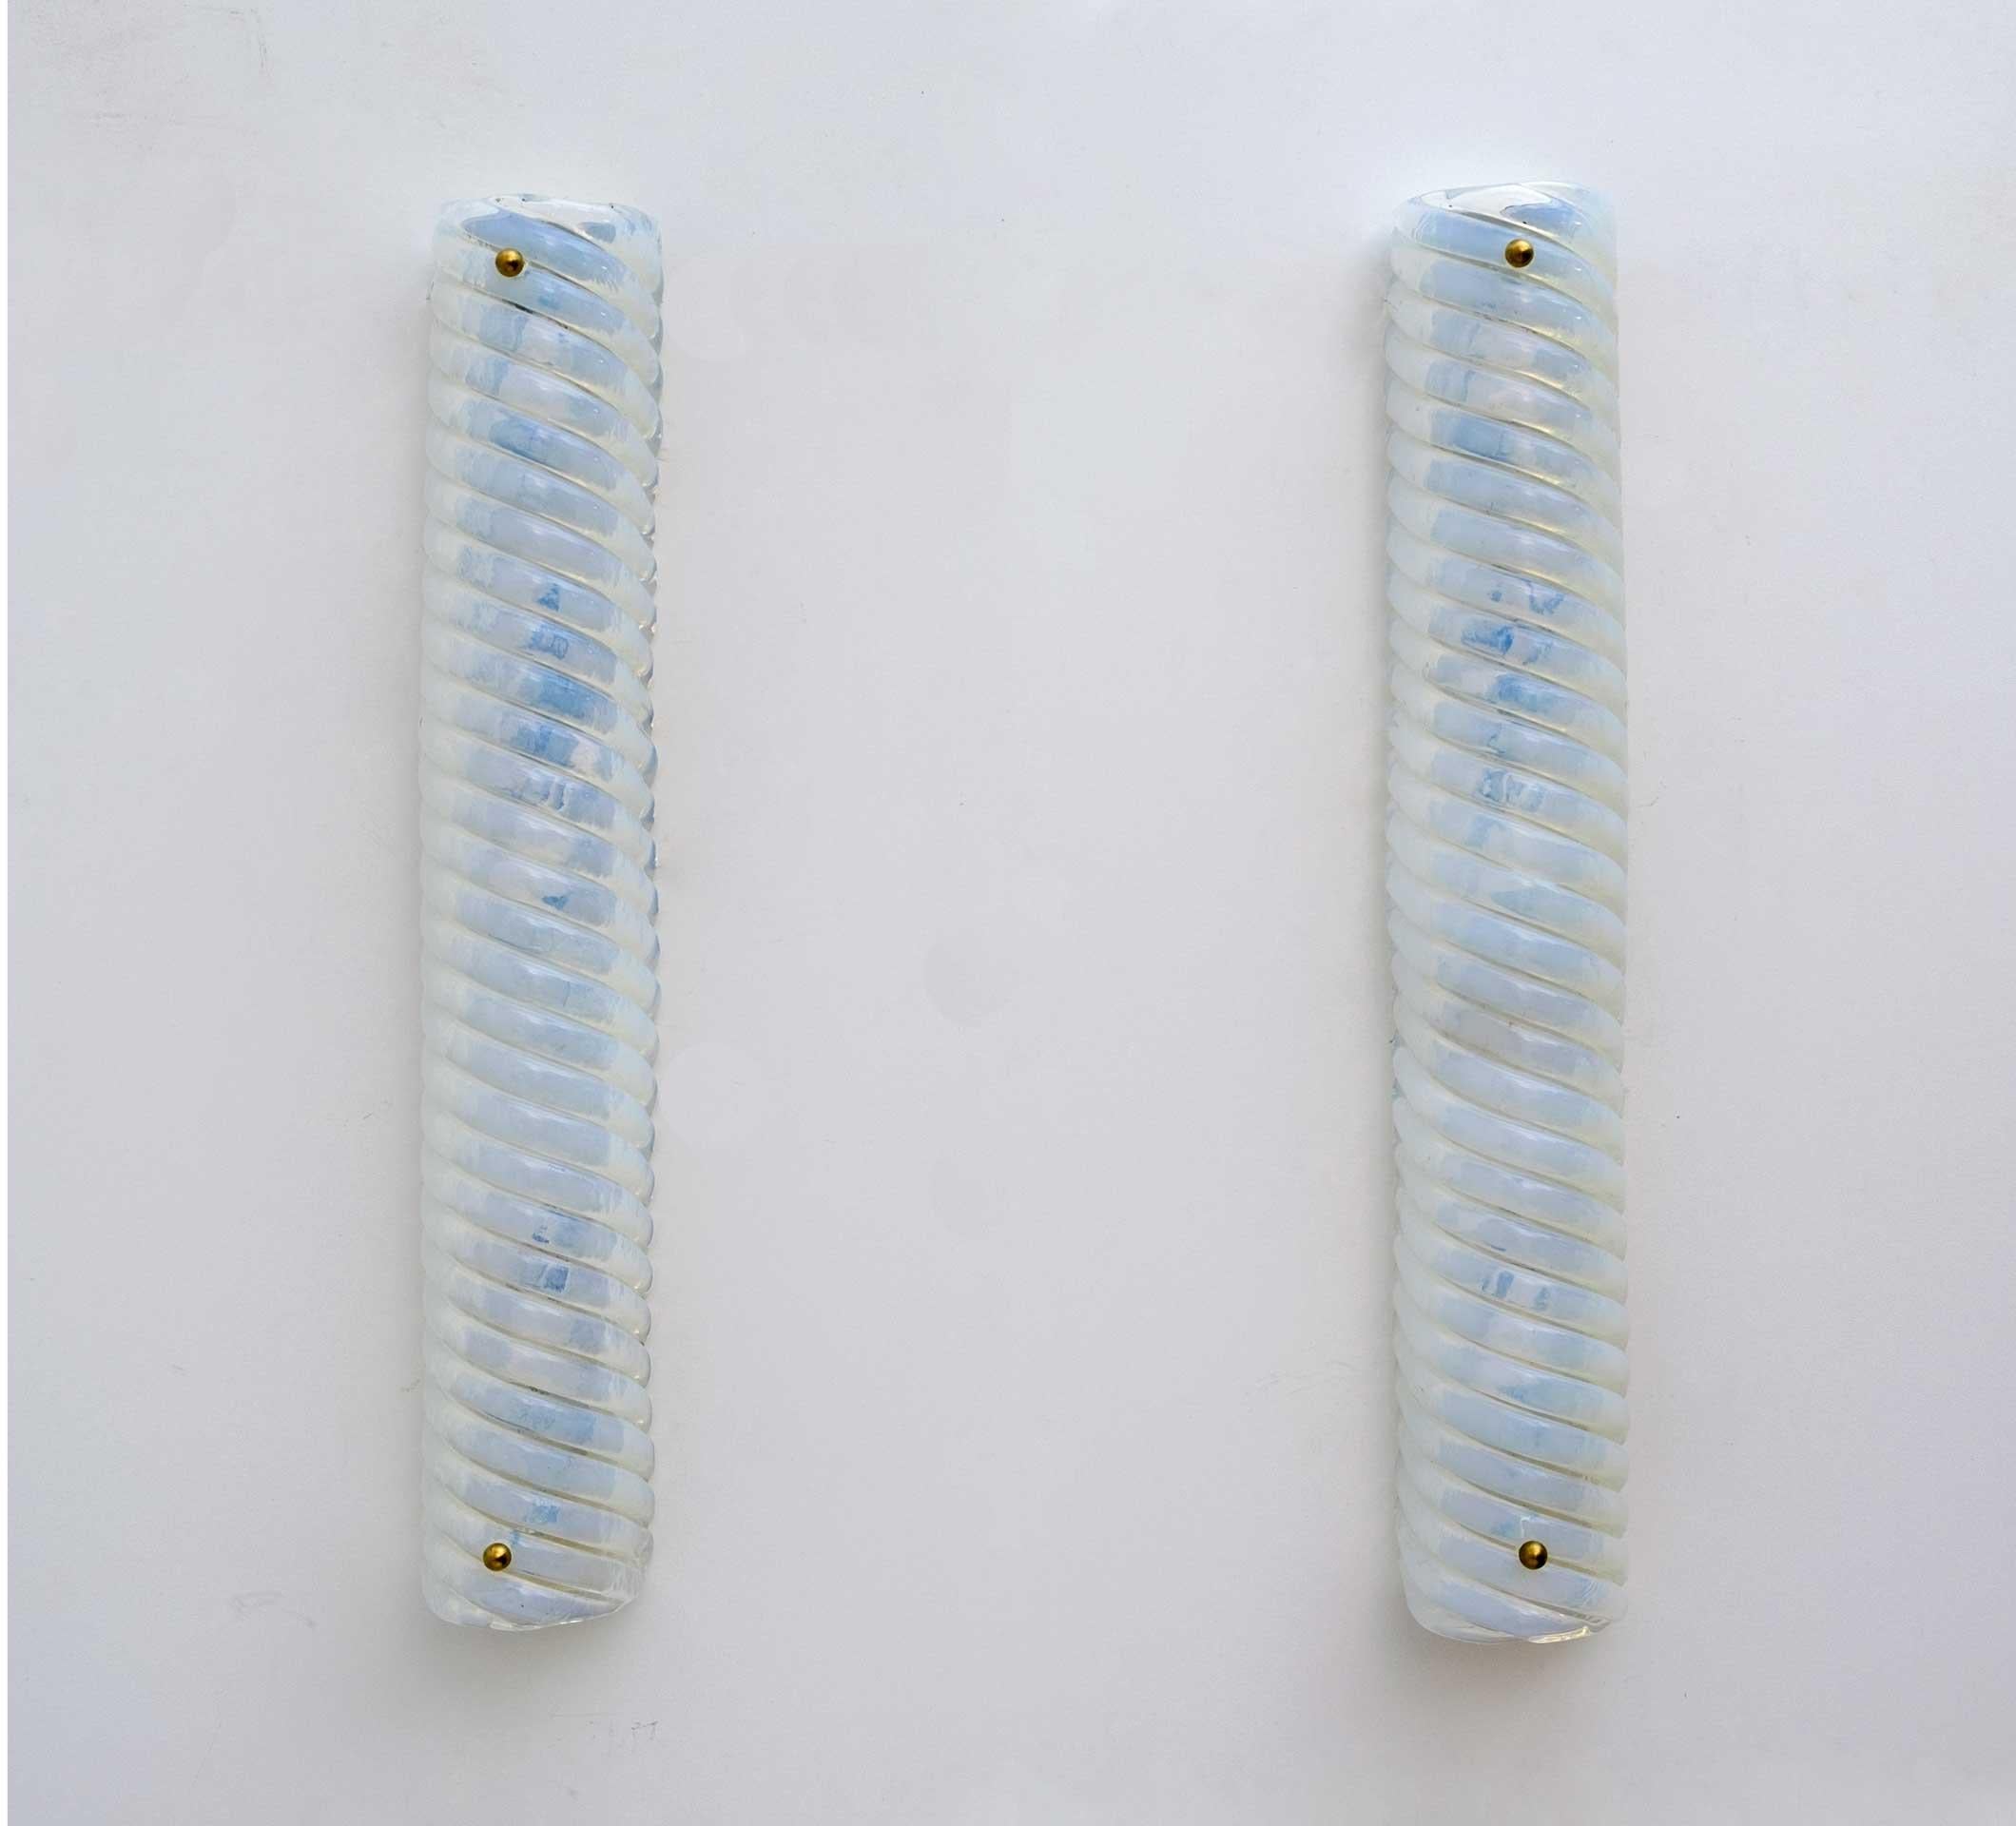 Acht schillernde Vintage-Wandlampen aus milchigem Murano-Glas, hergestellt von Maestri Murano. Sie sind von hoher Qualität und geben einen schönen warmen Schein ab. Jede Wandleuchte enthält drei Glühbirnen mit mittlerem Sockel und ist entsprechend